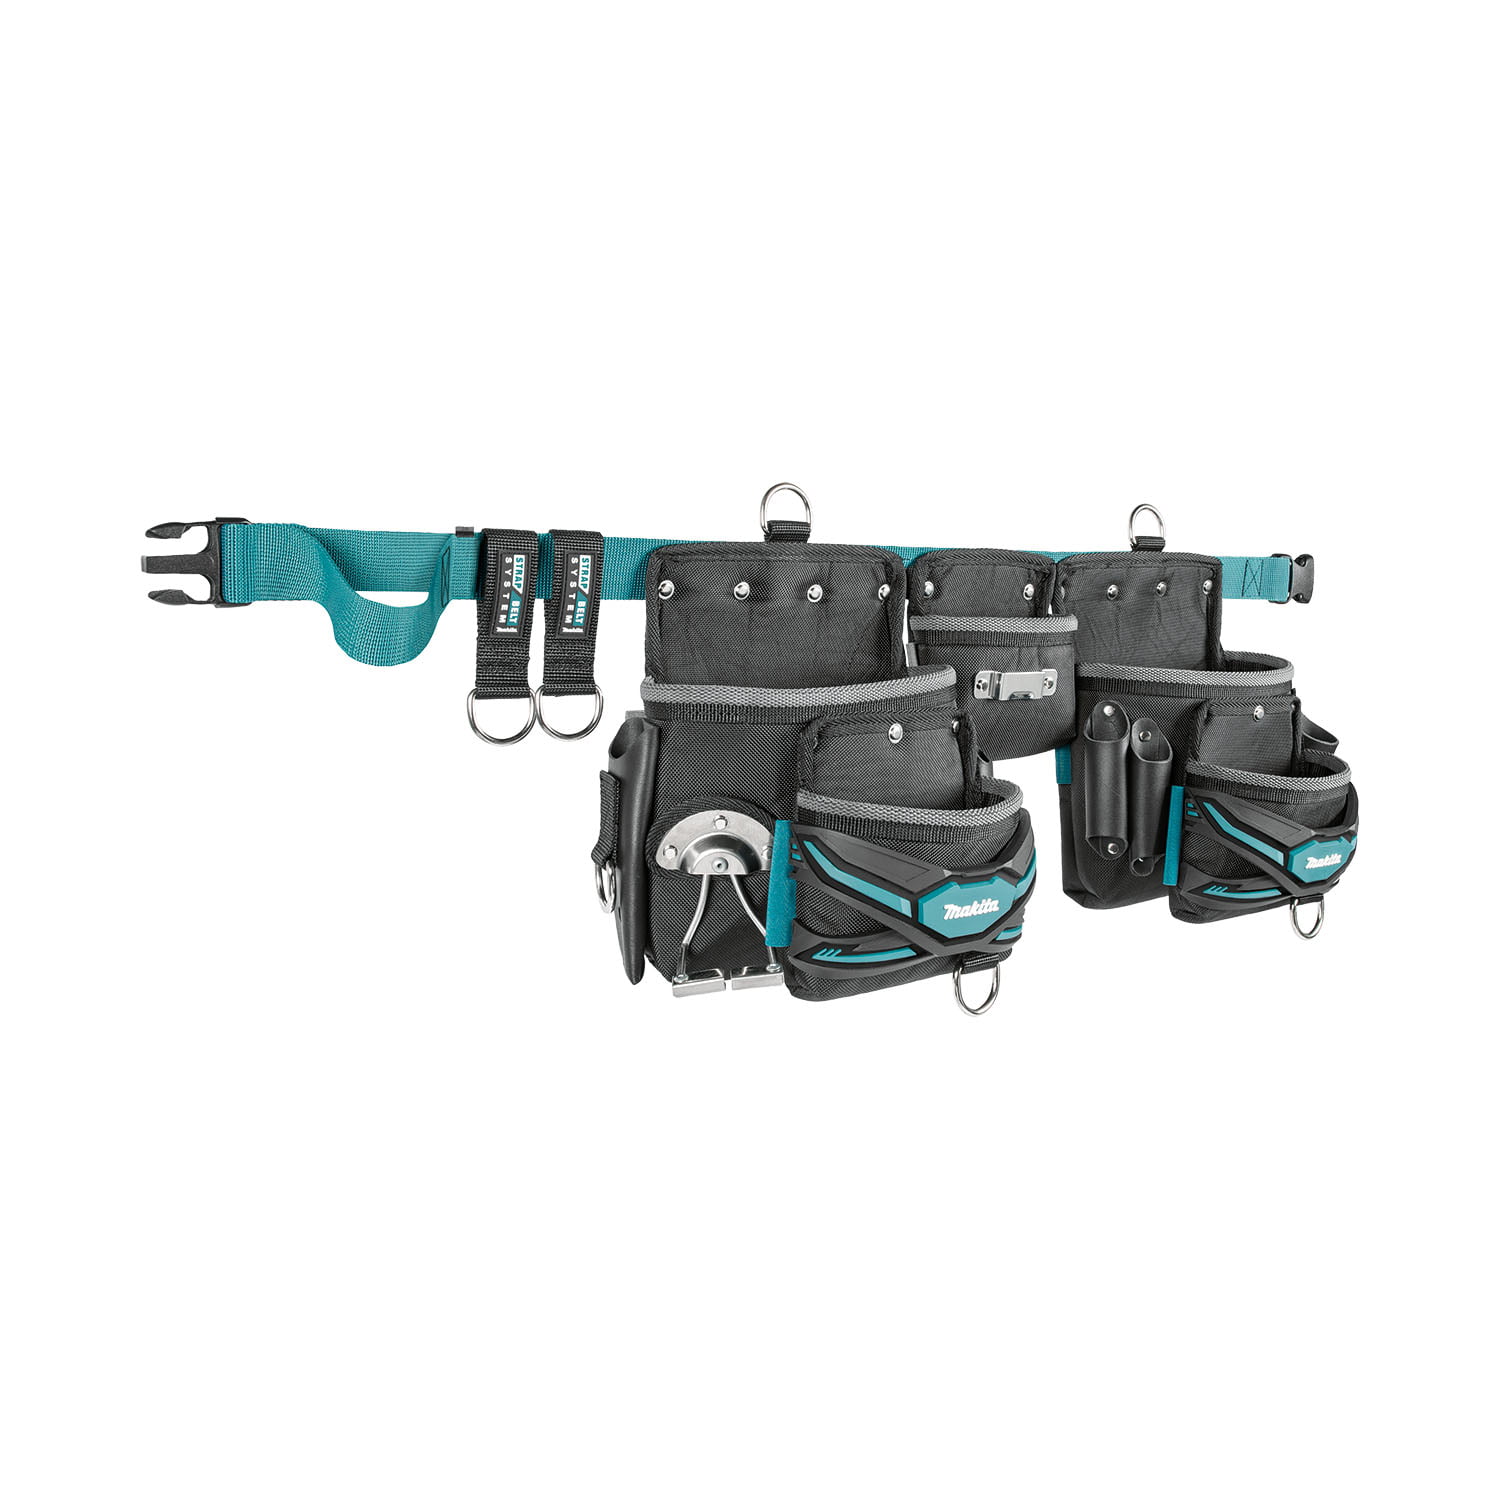 Makita pojas sa tri torbice E-05169 - masineialati.ba - Profesionalni i  hobi alati i mašine